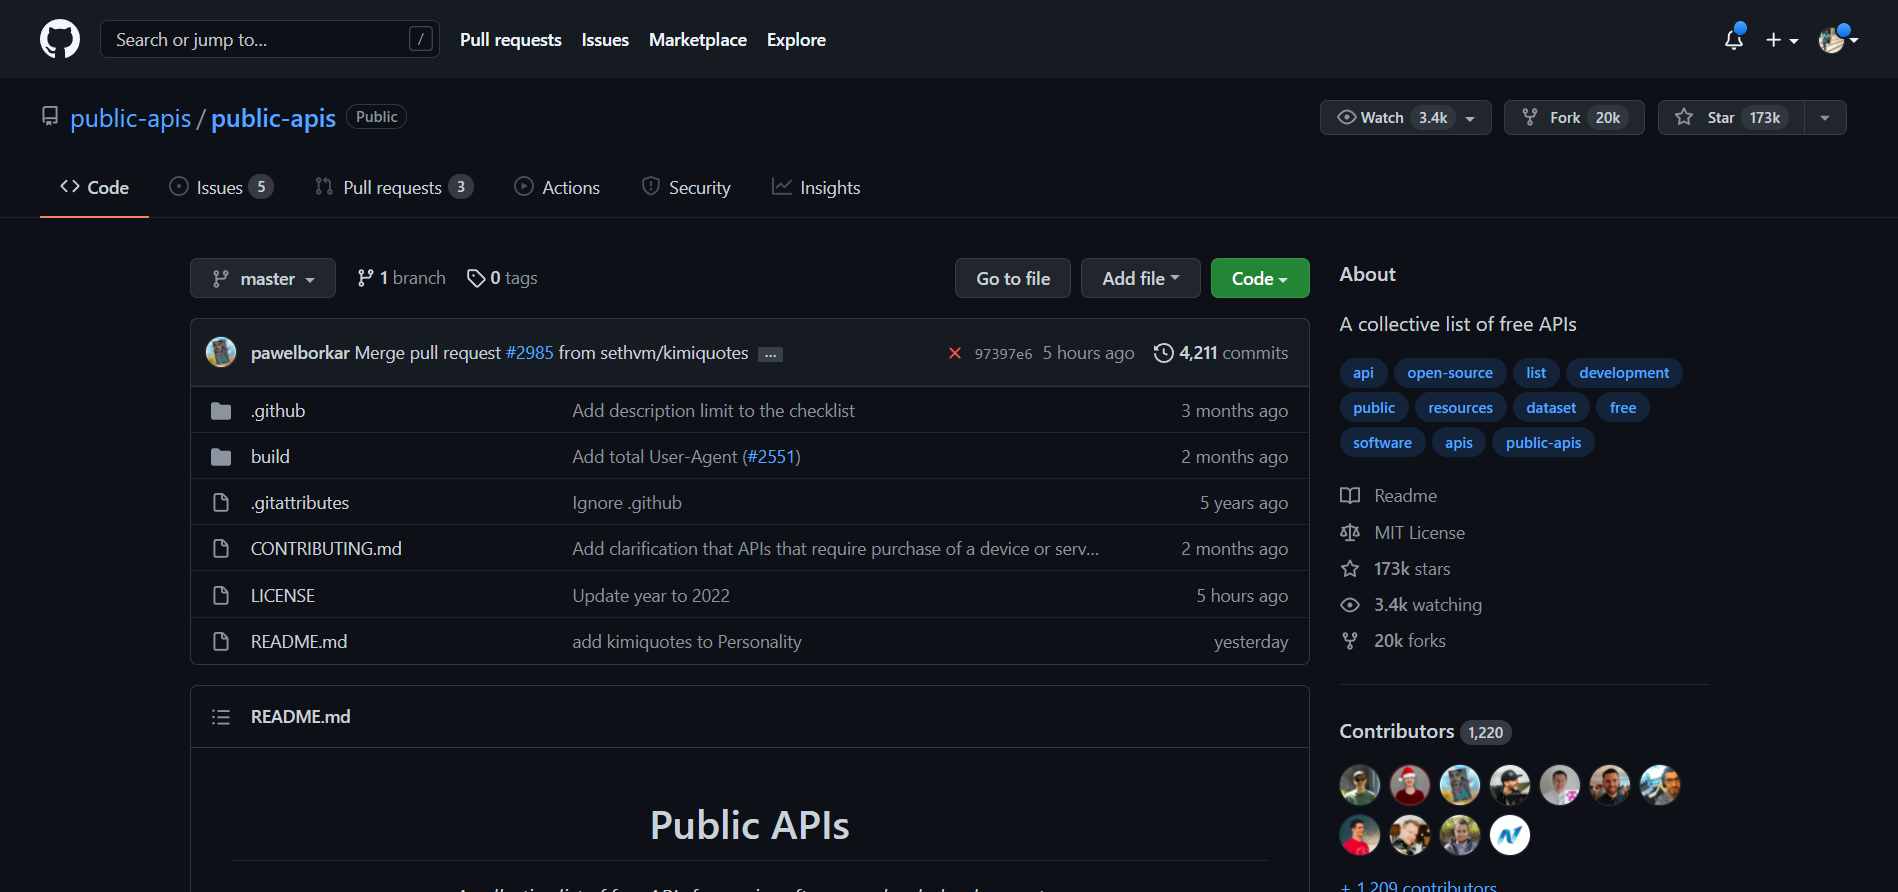 public-apis_public-apis_ A collective list of free APIs.png